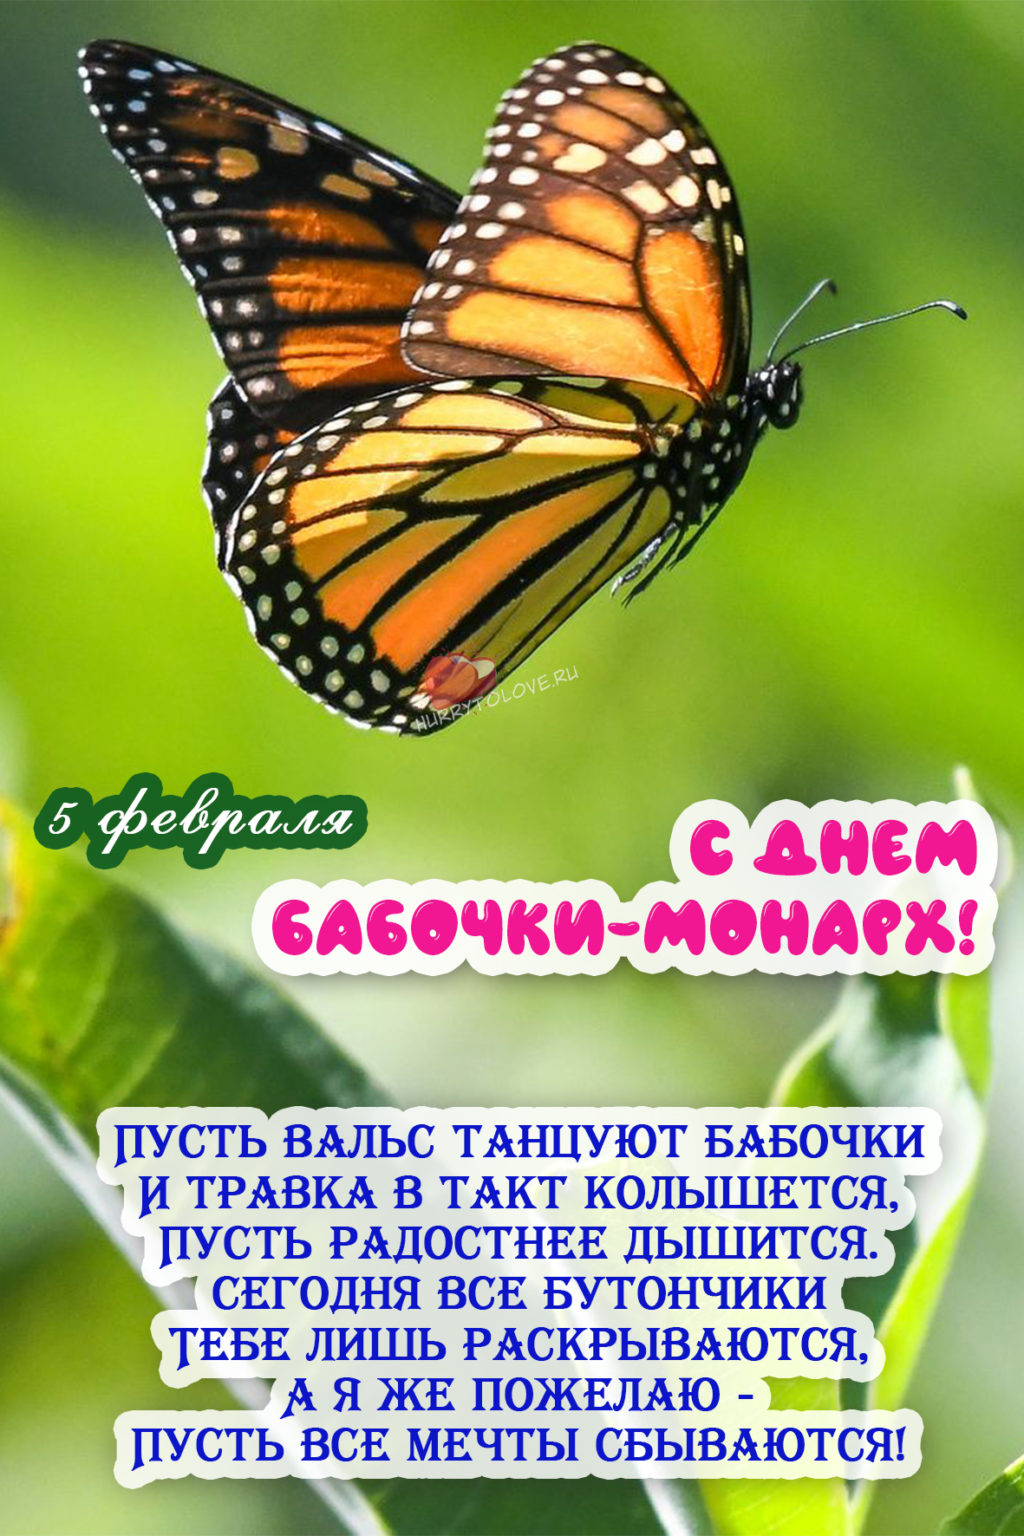 Картинка день бабочек. День бабочек. День бабочки-Монарх. День бабочки Монарх 5 февраля.